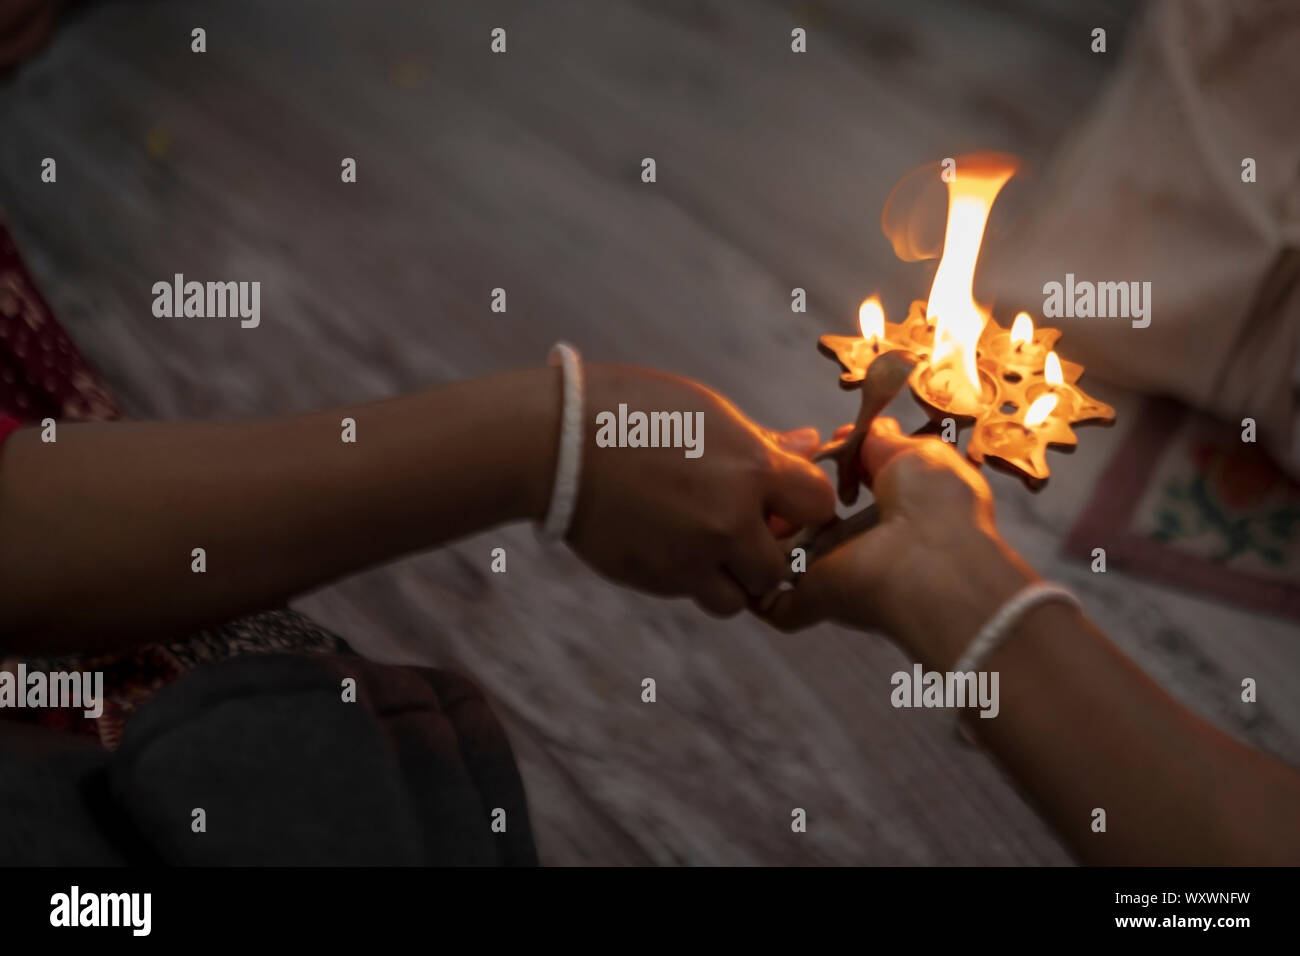 Brennendes Öl lampe oder Pancha pradip mit Feuer Flamme Aus - Hintergrund Bild der indisch-hinduistischen Tradition & kulturelles Ritual für Gott anbeten mit Stockfoto